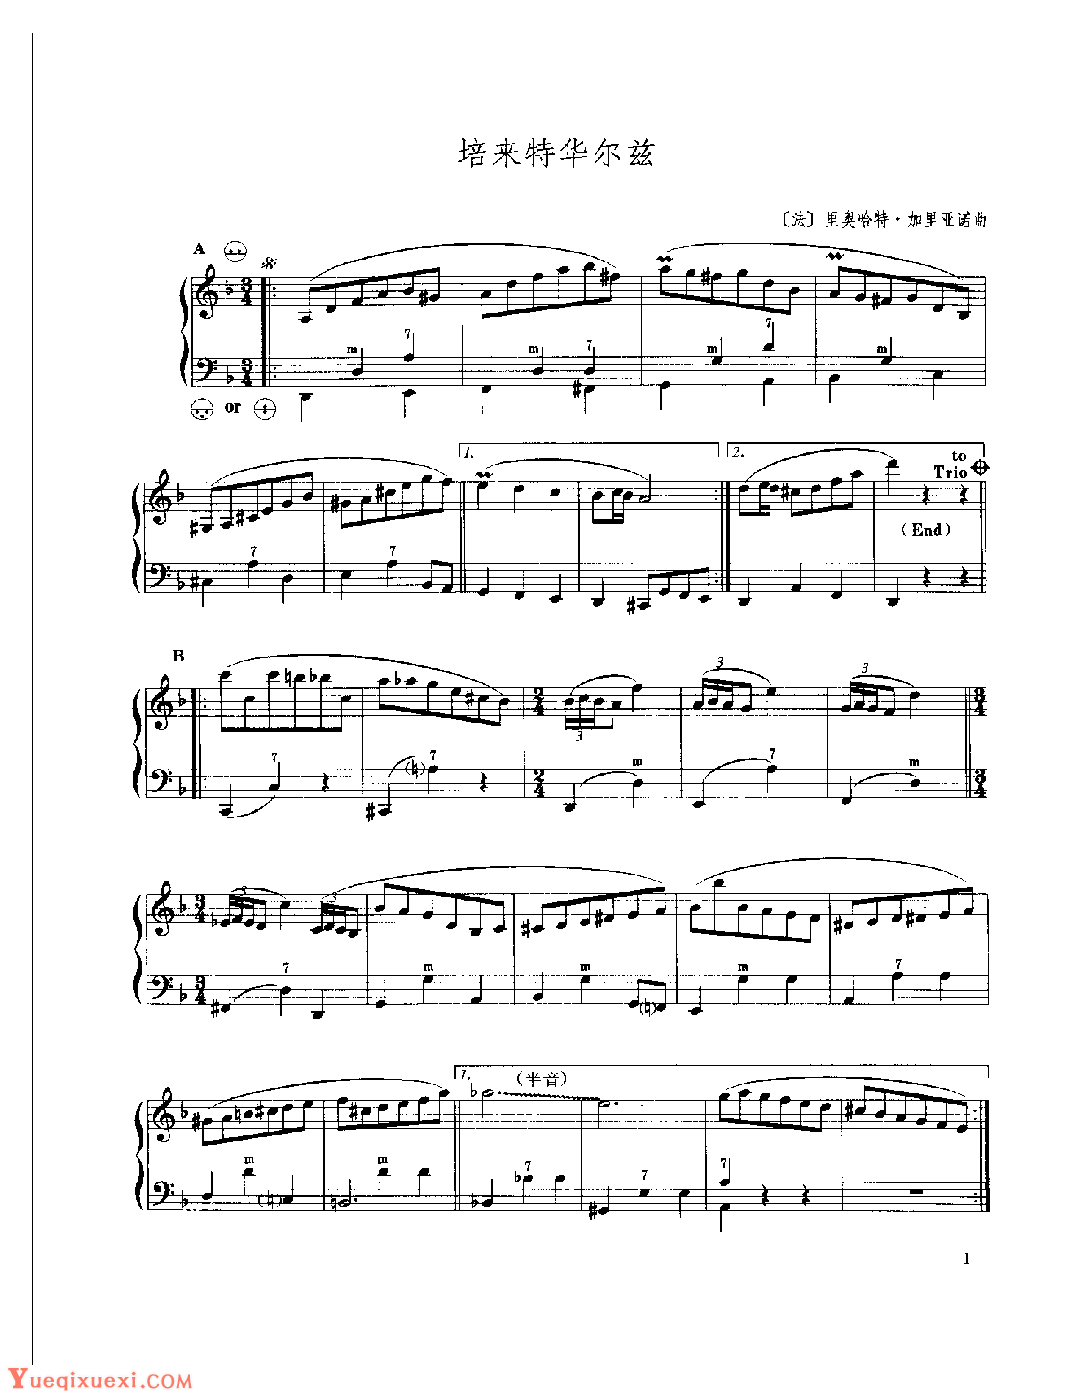 现代手风琴流行乐曲《培来特华尔兹 》[法]里奥哈特·加里亚诺曲